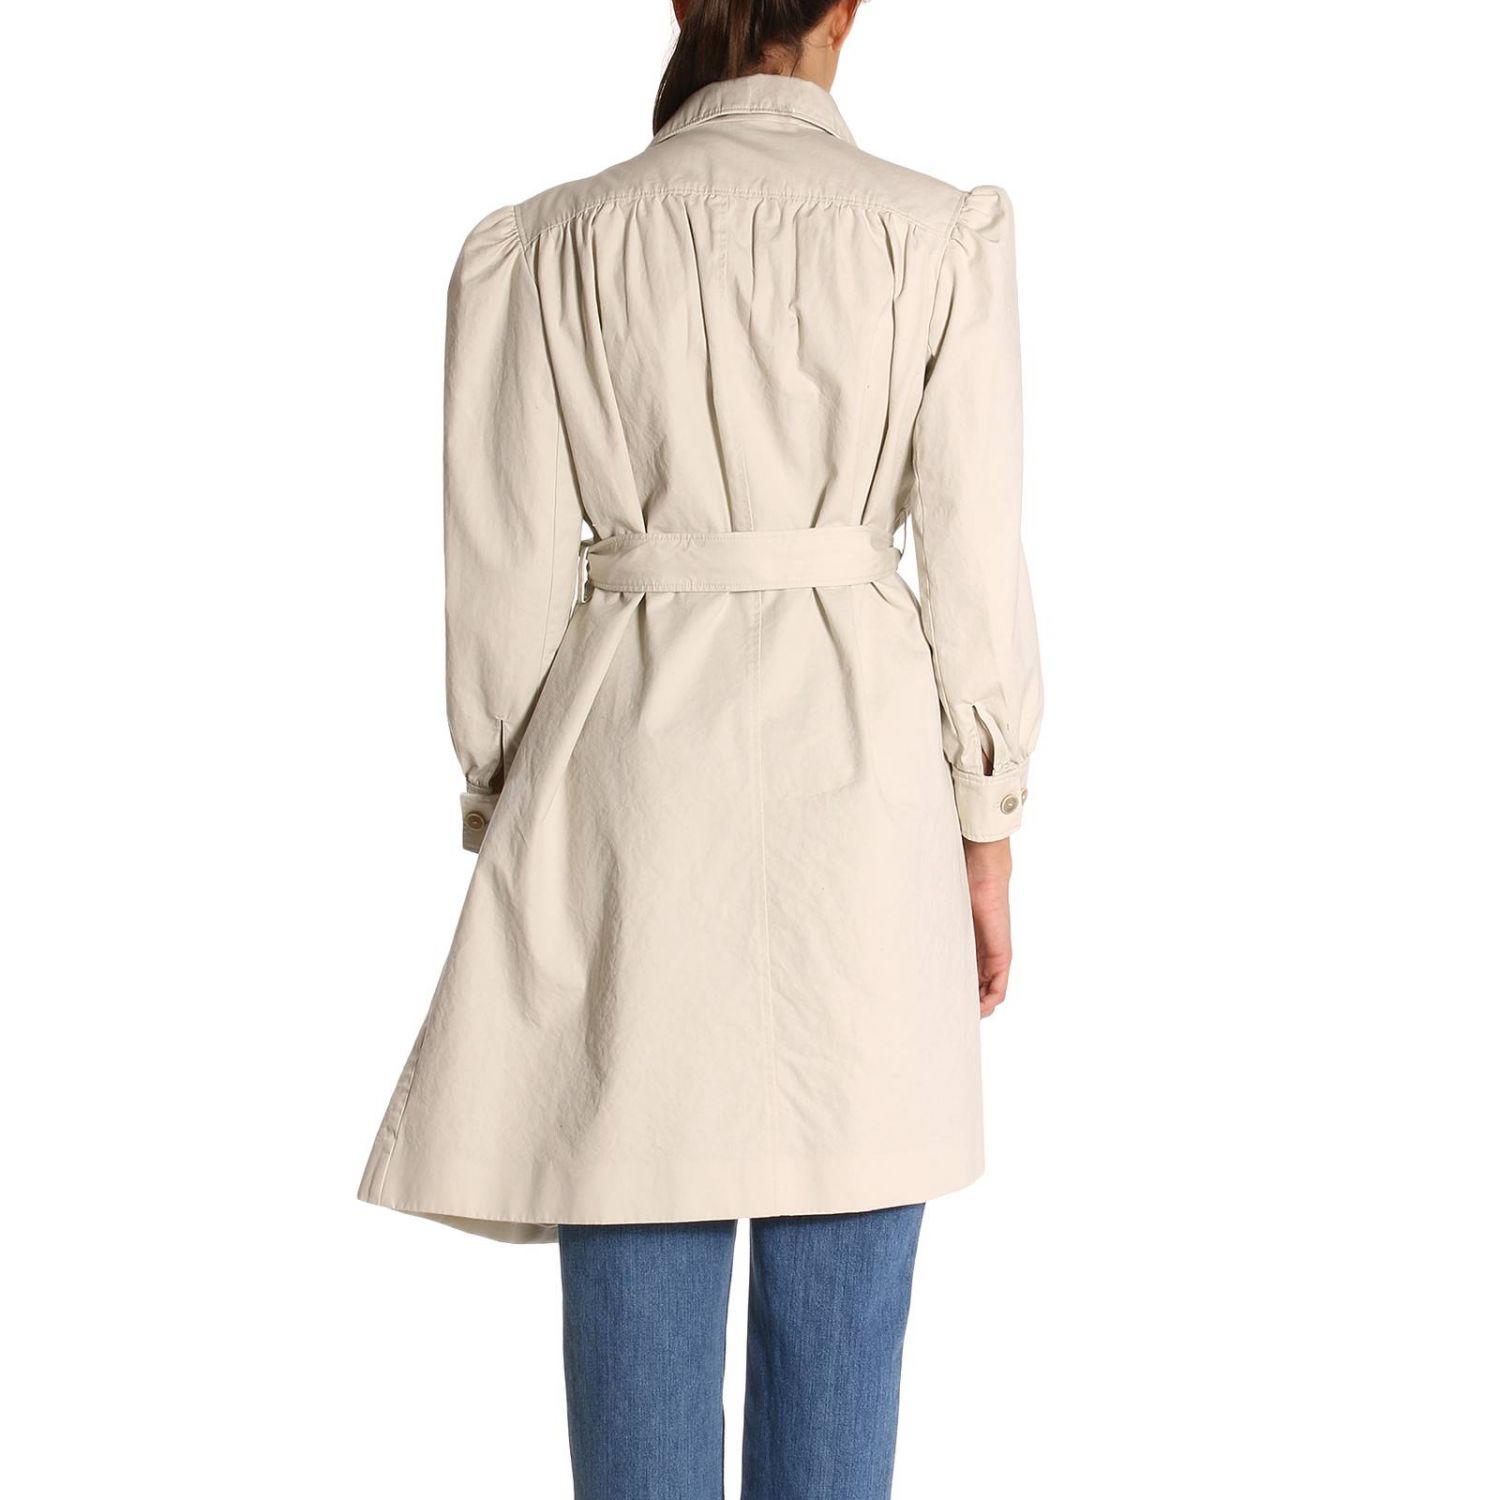 Balenciaga Outlet: Coat women | Coat Balenciaga Women White | Coat ...